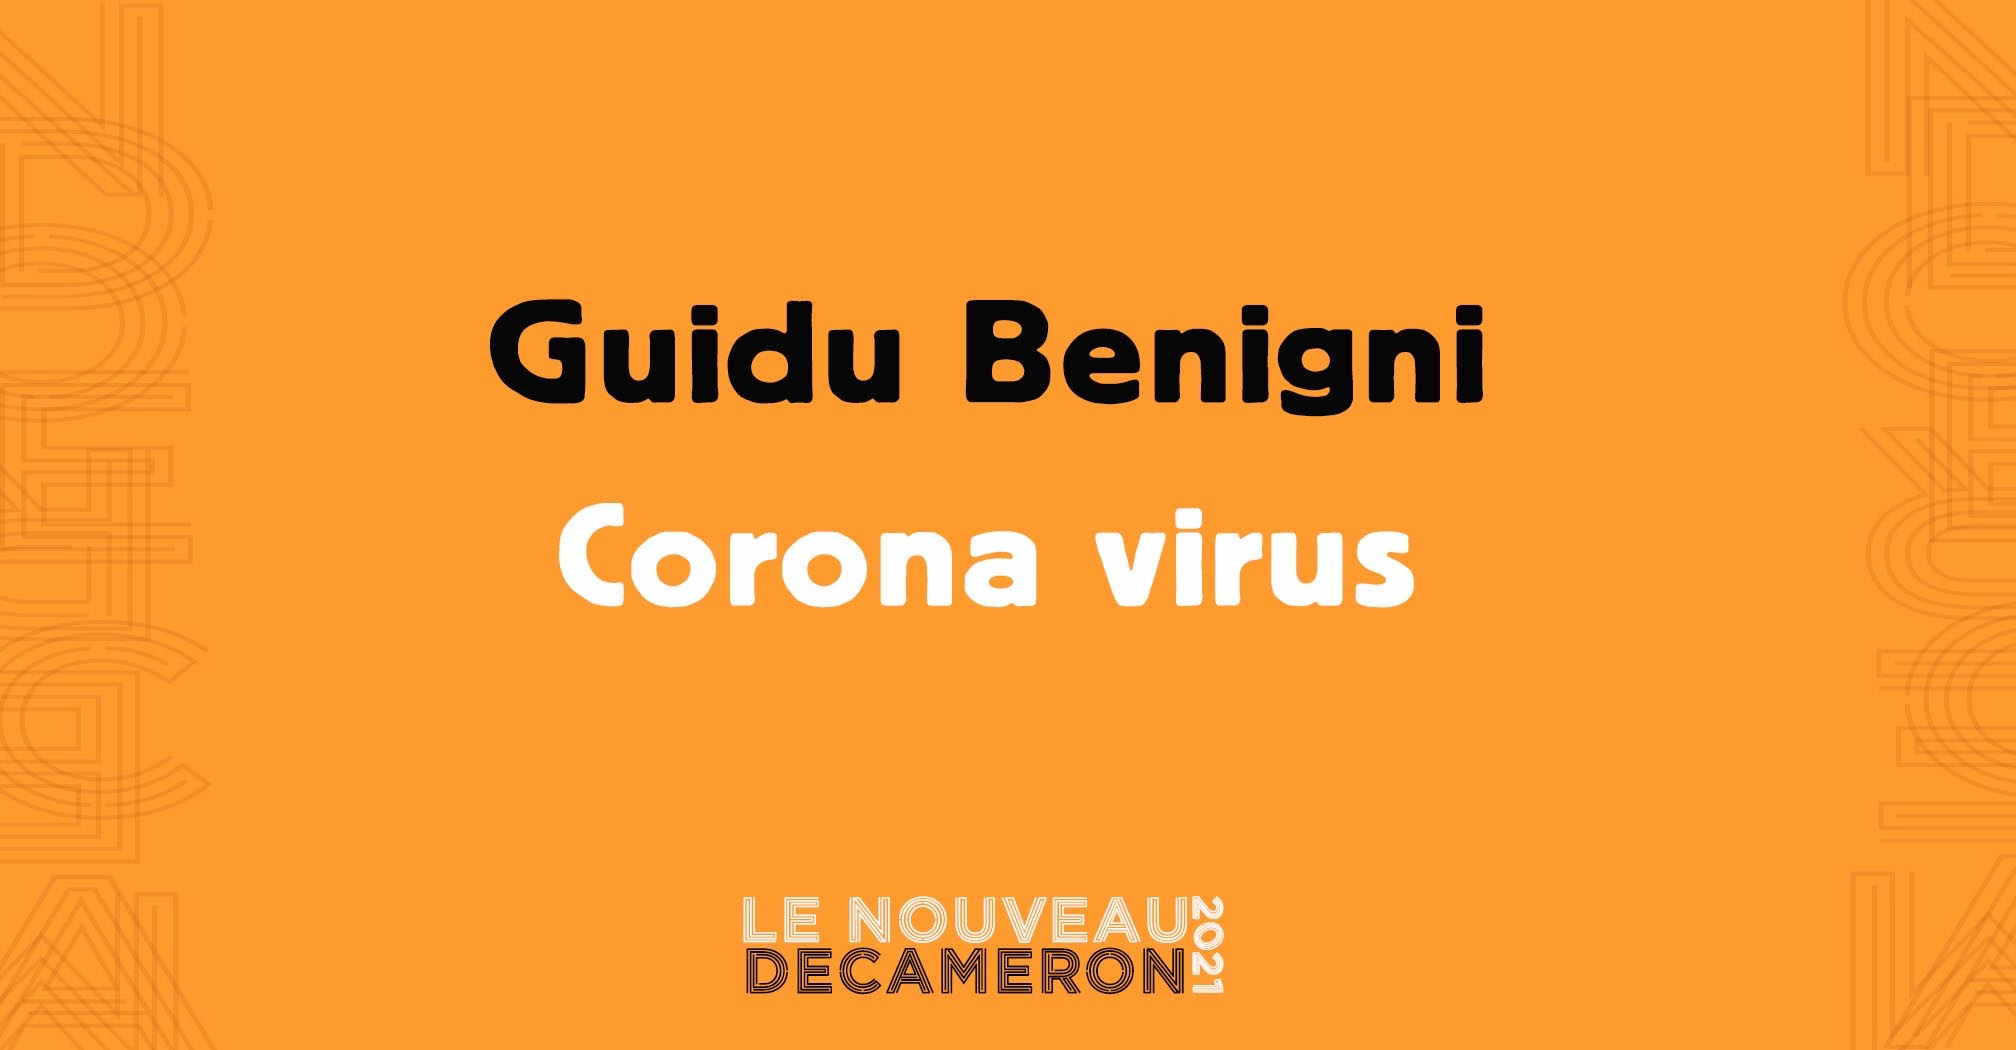 Guidu Benigni - Corona virus